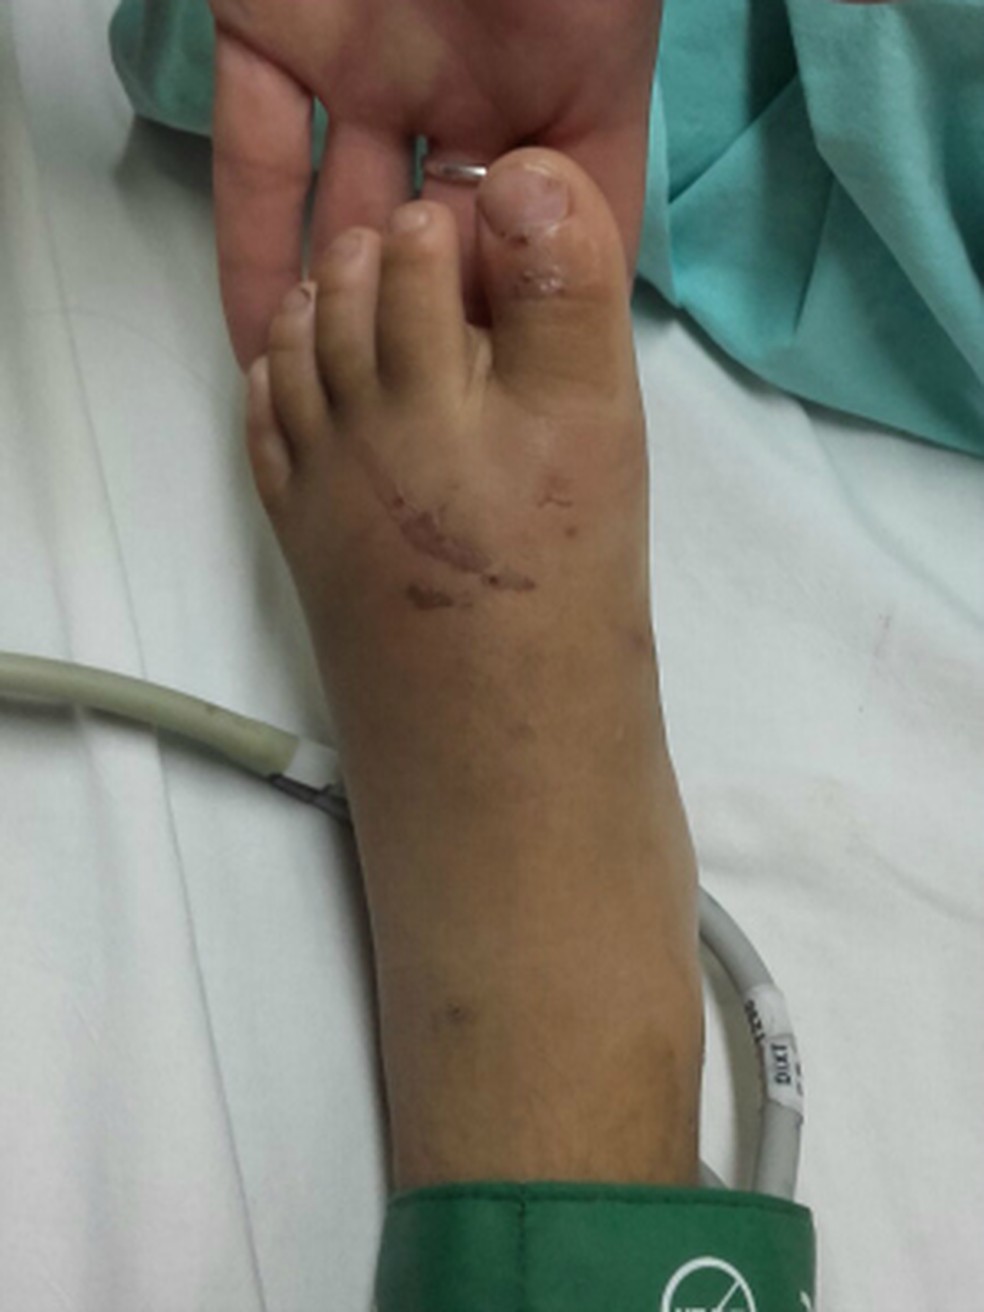 Criança tem ferimentos nos pés e teve uma das unhas arrancadas durante tortura em ritual (Foto: Divulgação/ Polícia Civil de MS/Arquivo)